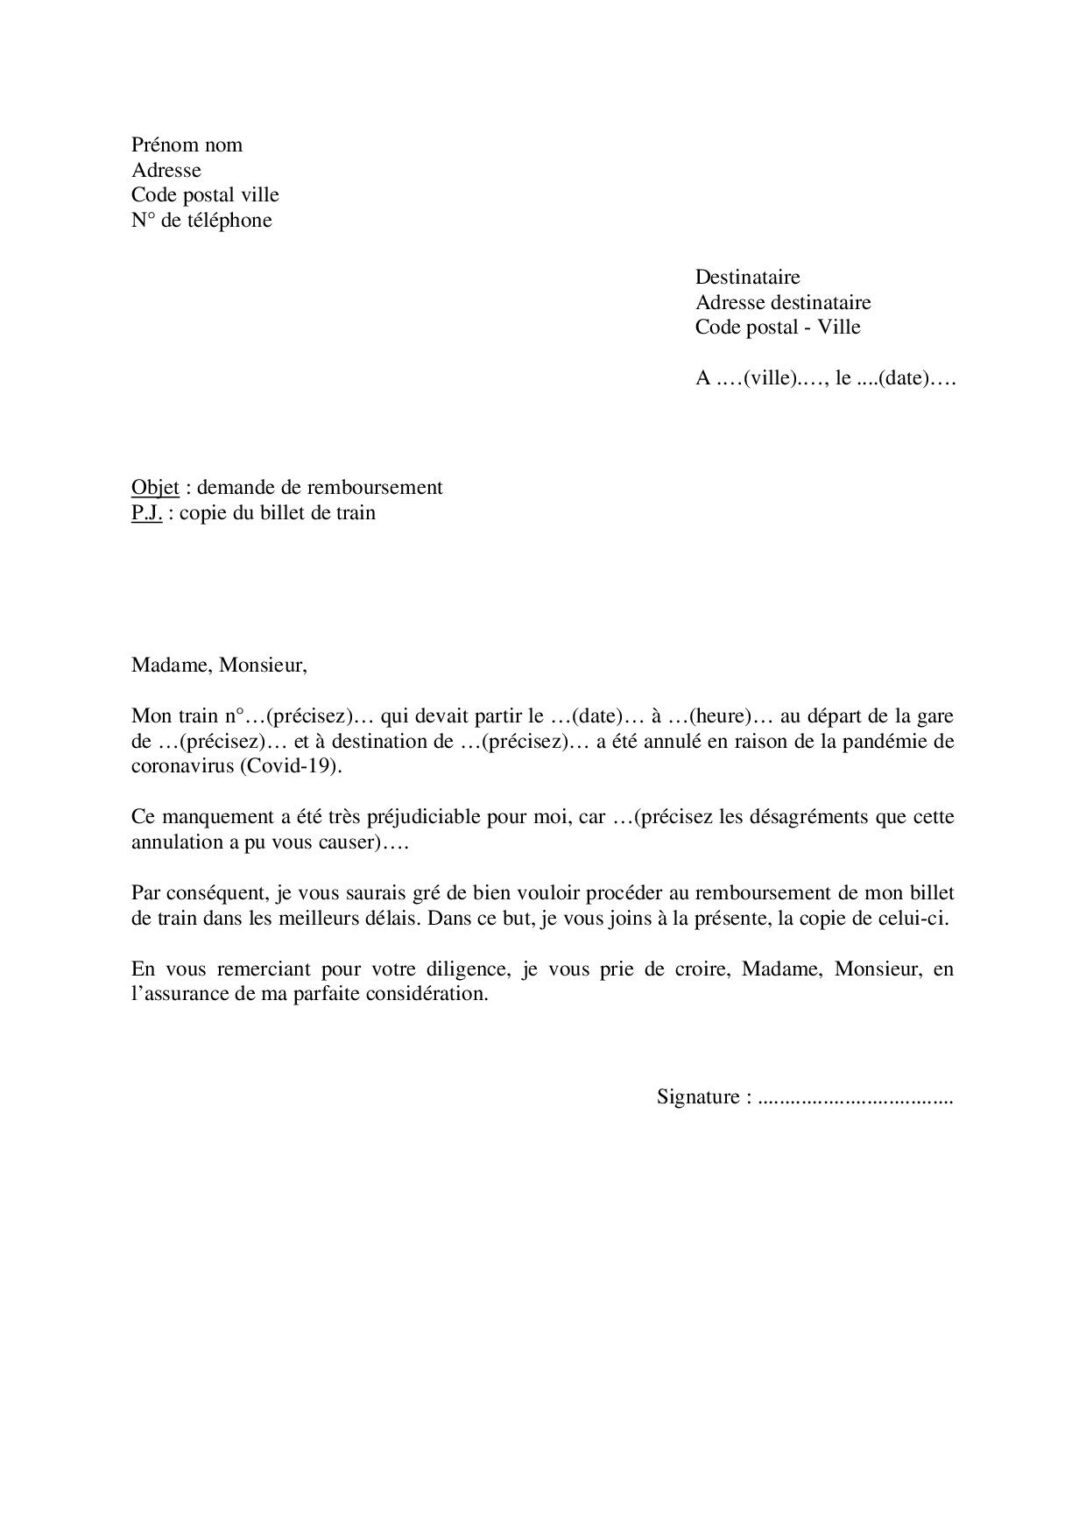 Coronavirus : demande de remboursement de billet de train SNCF